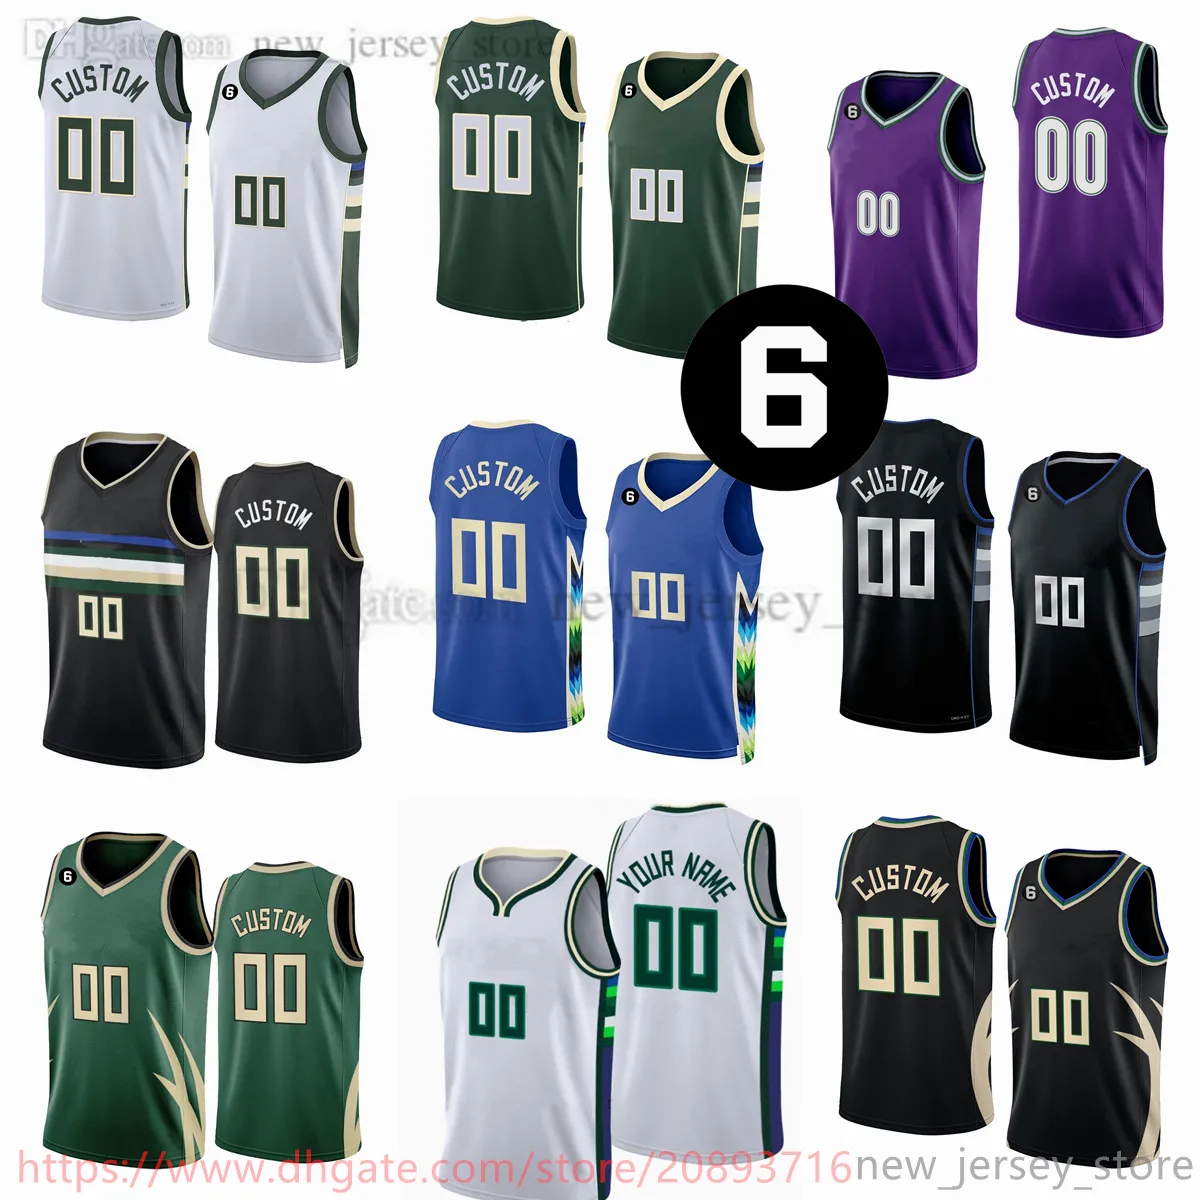 Anpassad 2022-23 Ny säsong tryckt baskettröjor lägger till 6 patch grön blå lila vita svarta tröjor. Meddela valfritt nummer och namn på beställningen